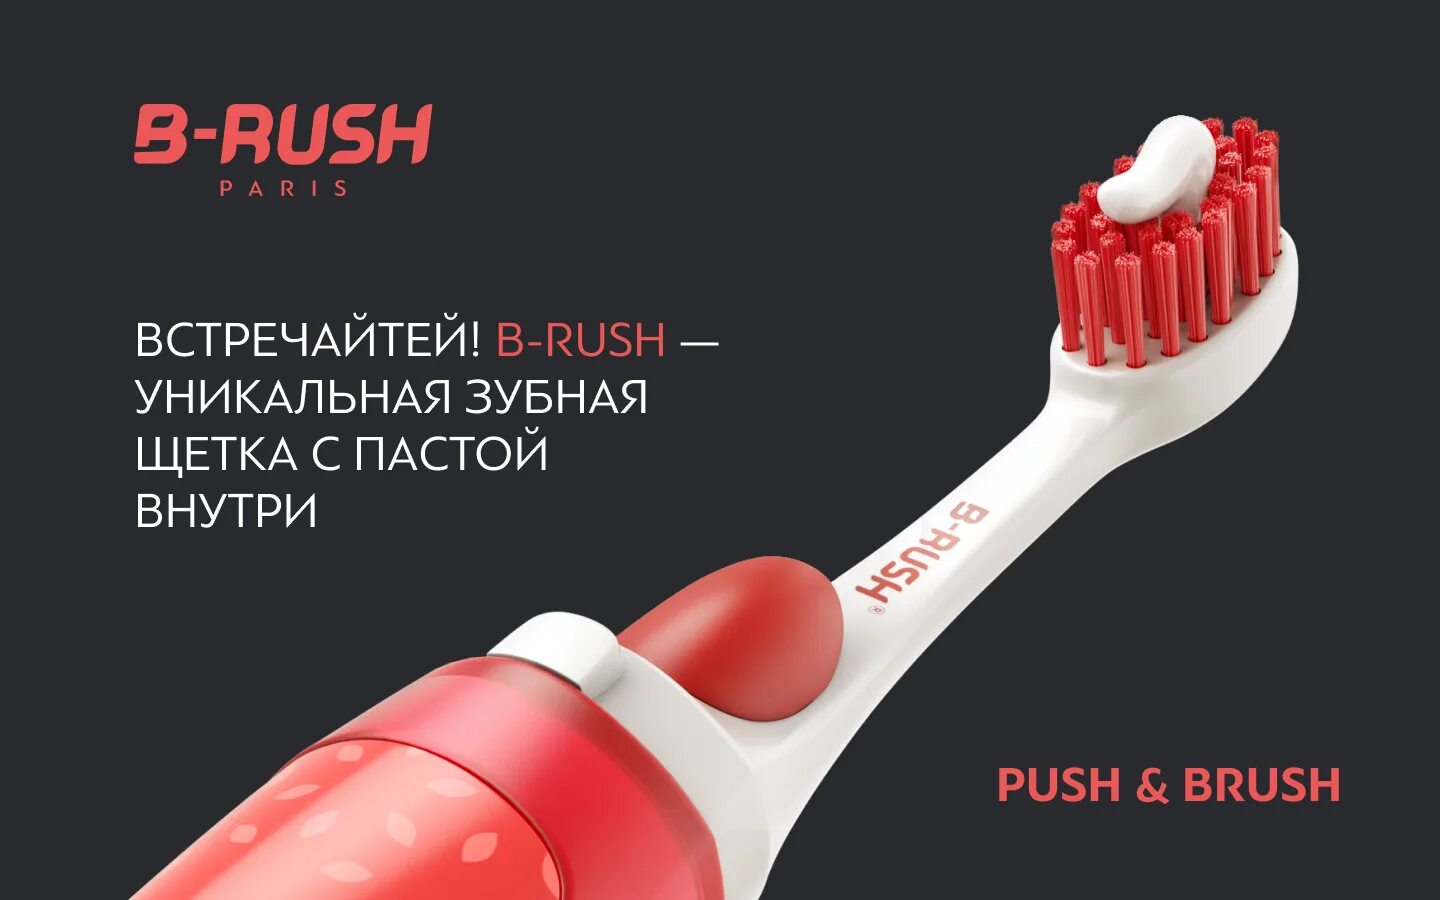 Паста купить щетка. Push Brush зубная щетка. Brush зубная щетка с пастой. Зубная щетка с пастой внутри. Зубная щетка с пастой внутри Brush.